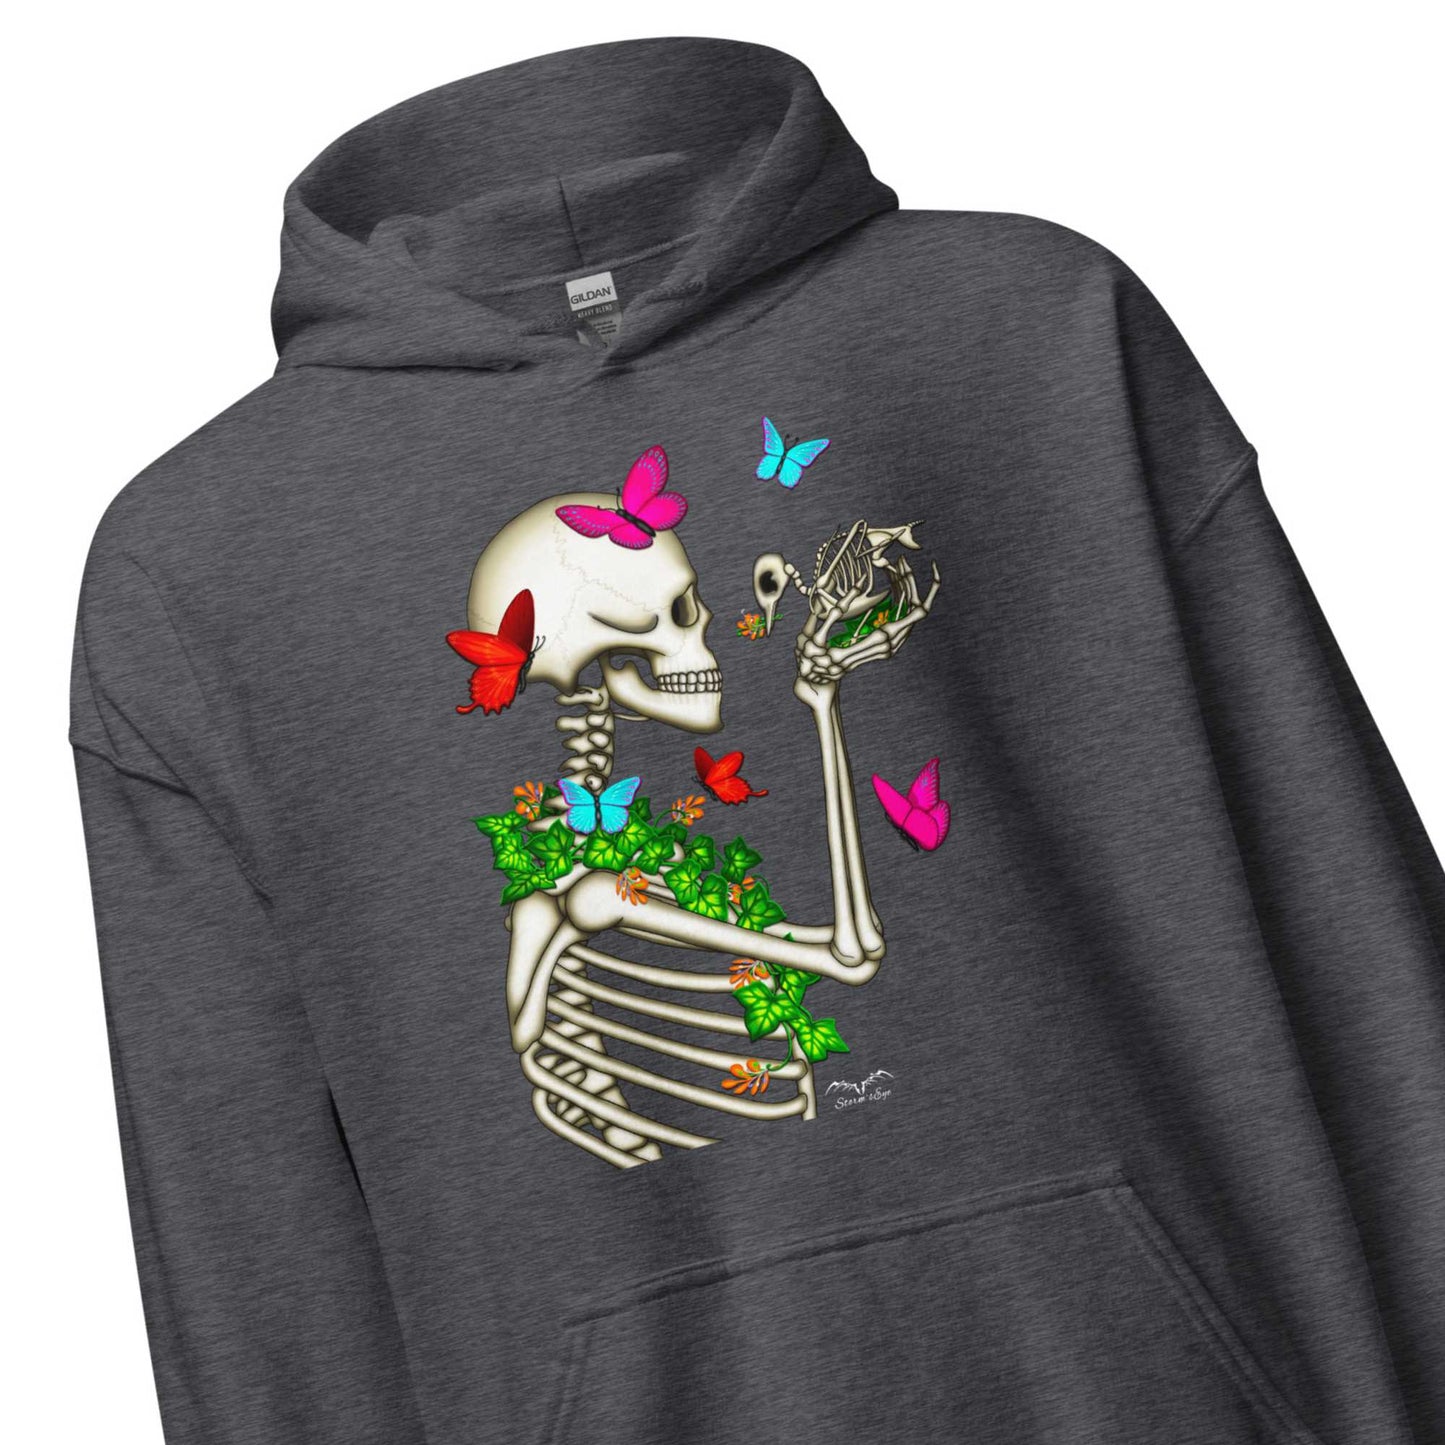 stormseye design skeleton and bird hoodie detail view dark heather